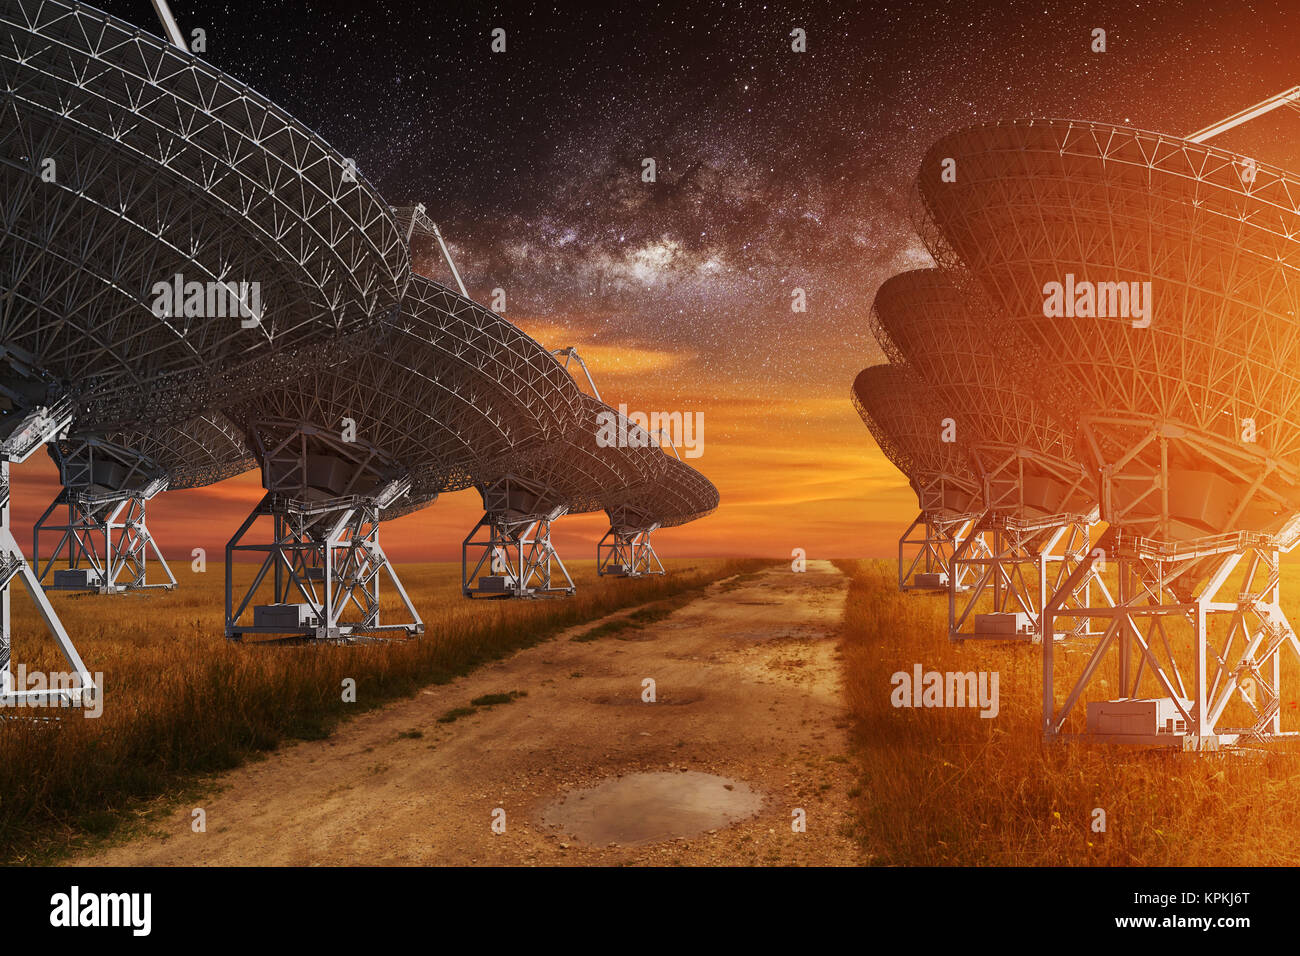 Radio Telescope view at night Stock Photo